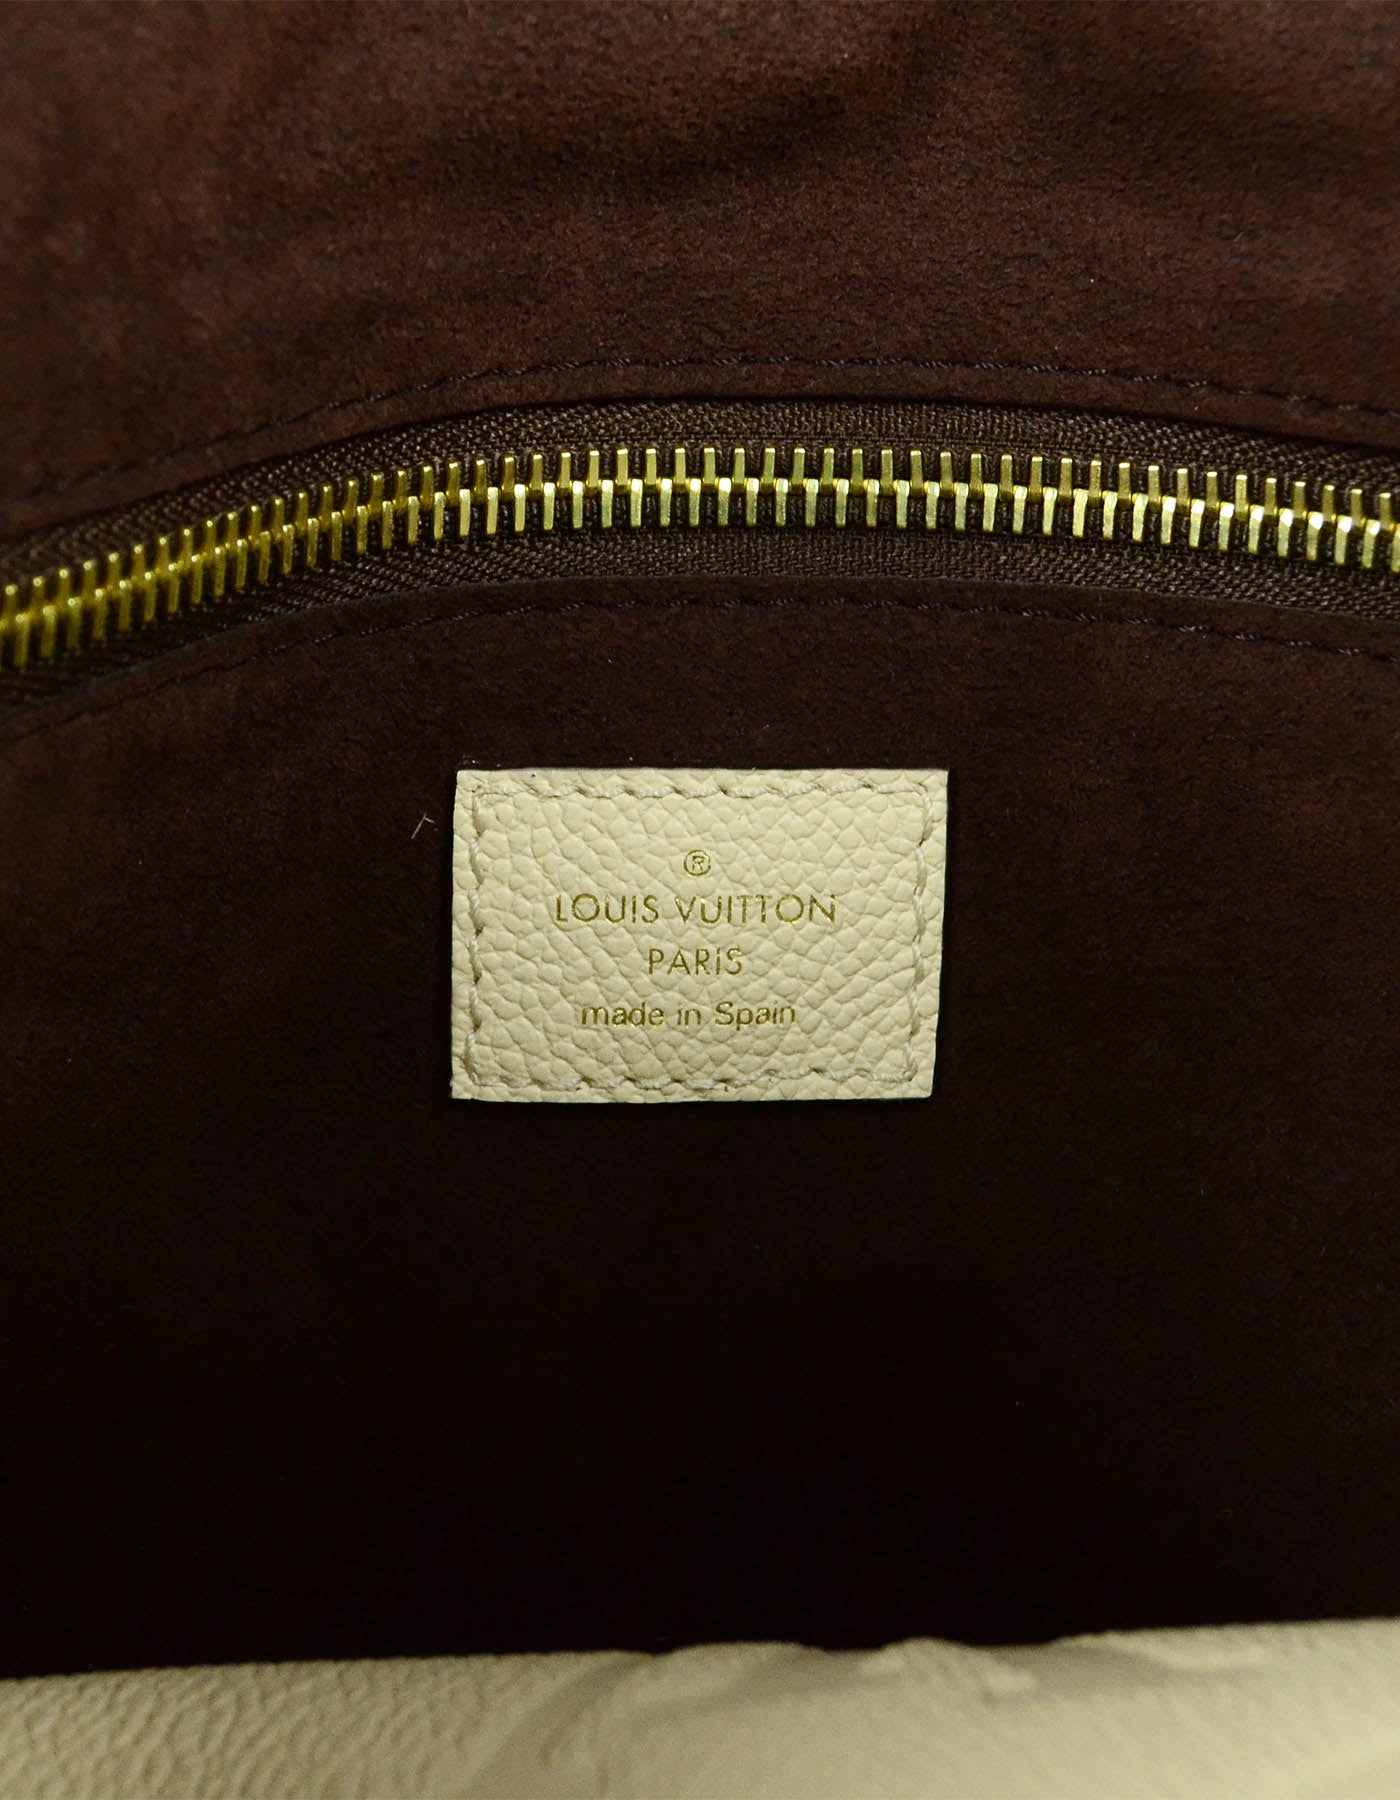 The LV Neverfull in Empreinte leather. #louisvuitton #lv #lvbag